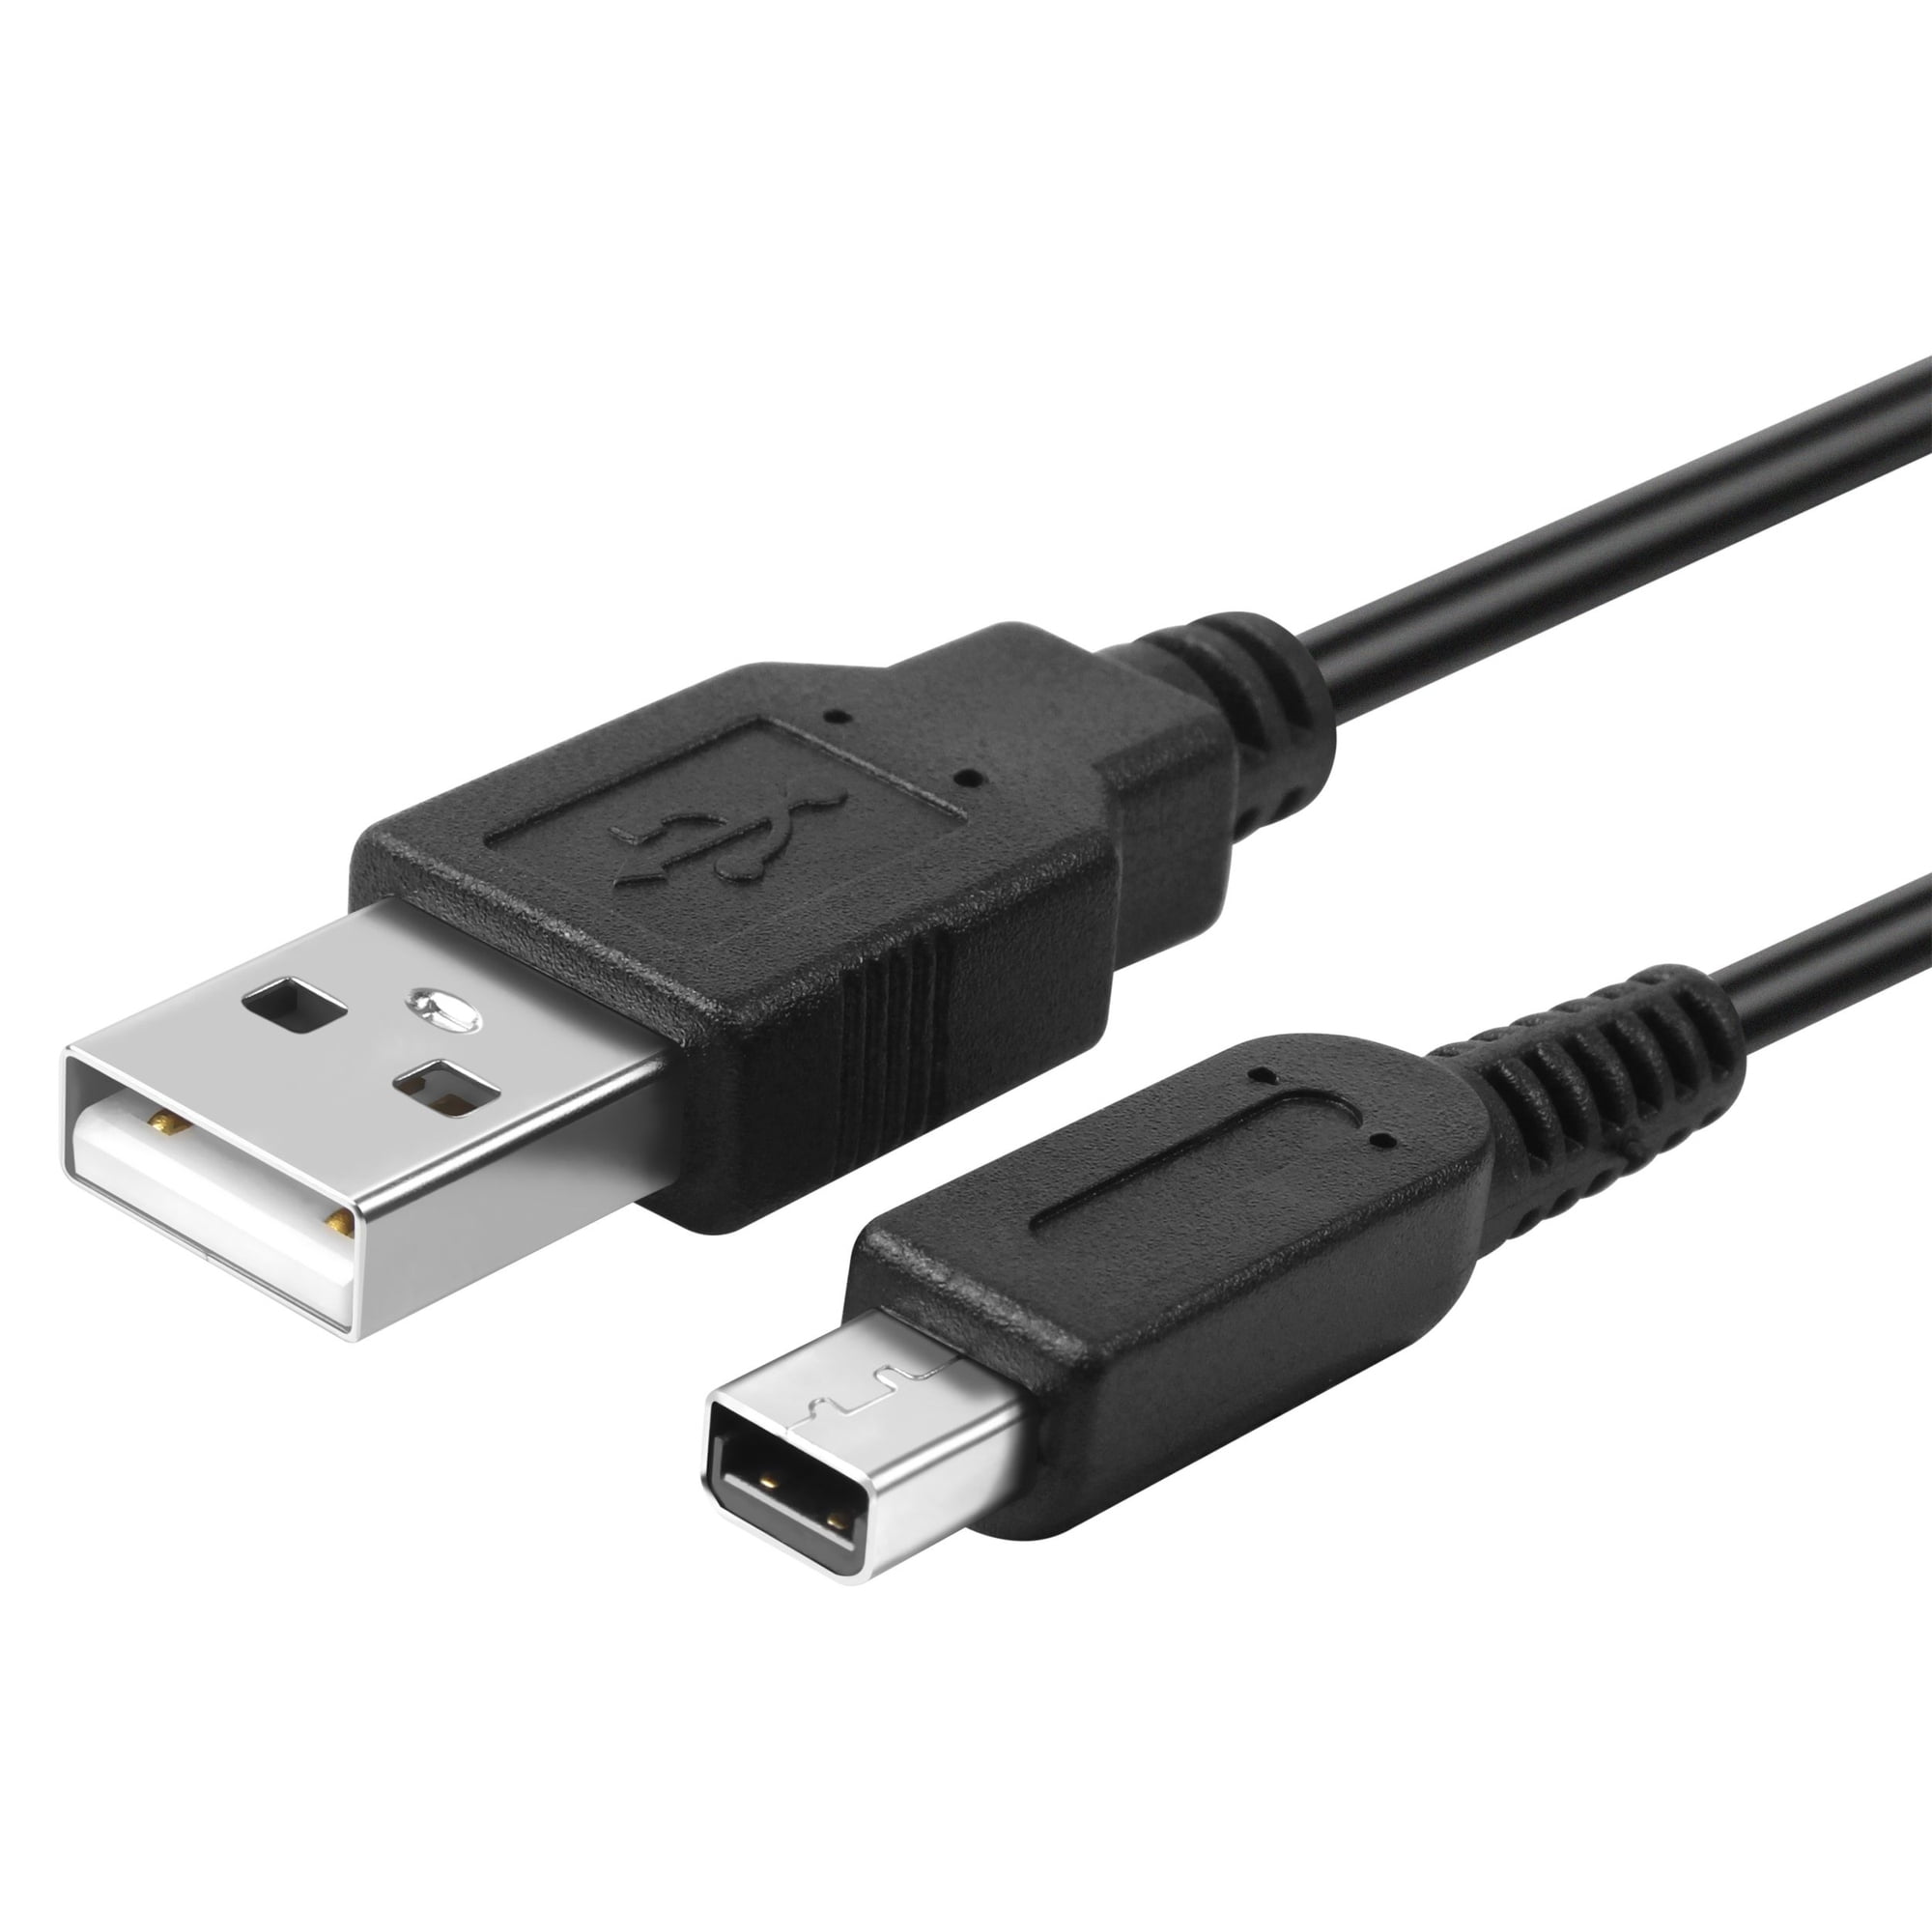 Cable de charge USB chargeur Nintendo 3DS/DSi/DSi XL/ DS Lite